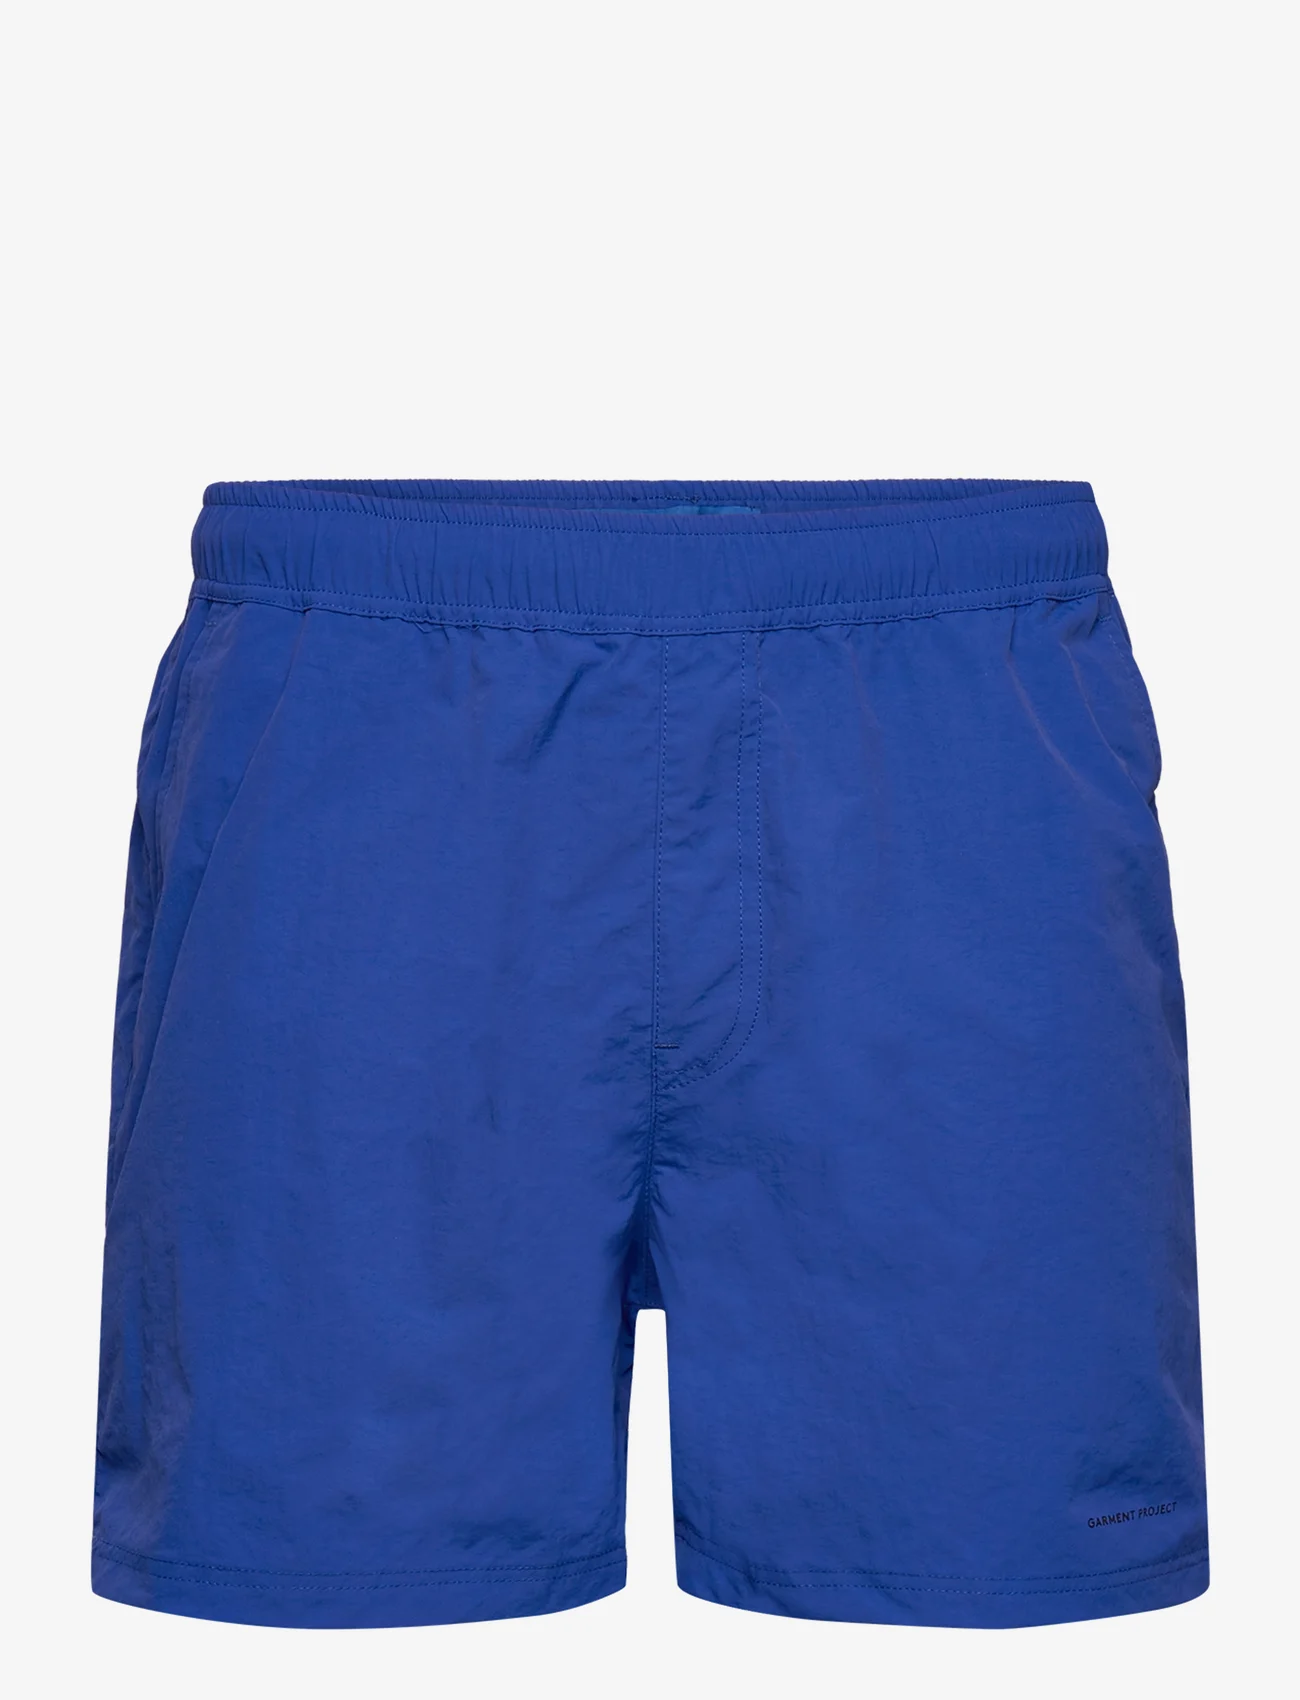 Garment Project - Tech Shorts - Blue - lühikesed ujumispüksid - blue - 0